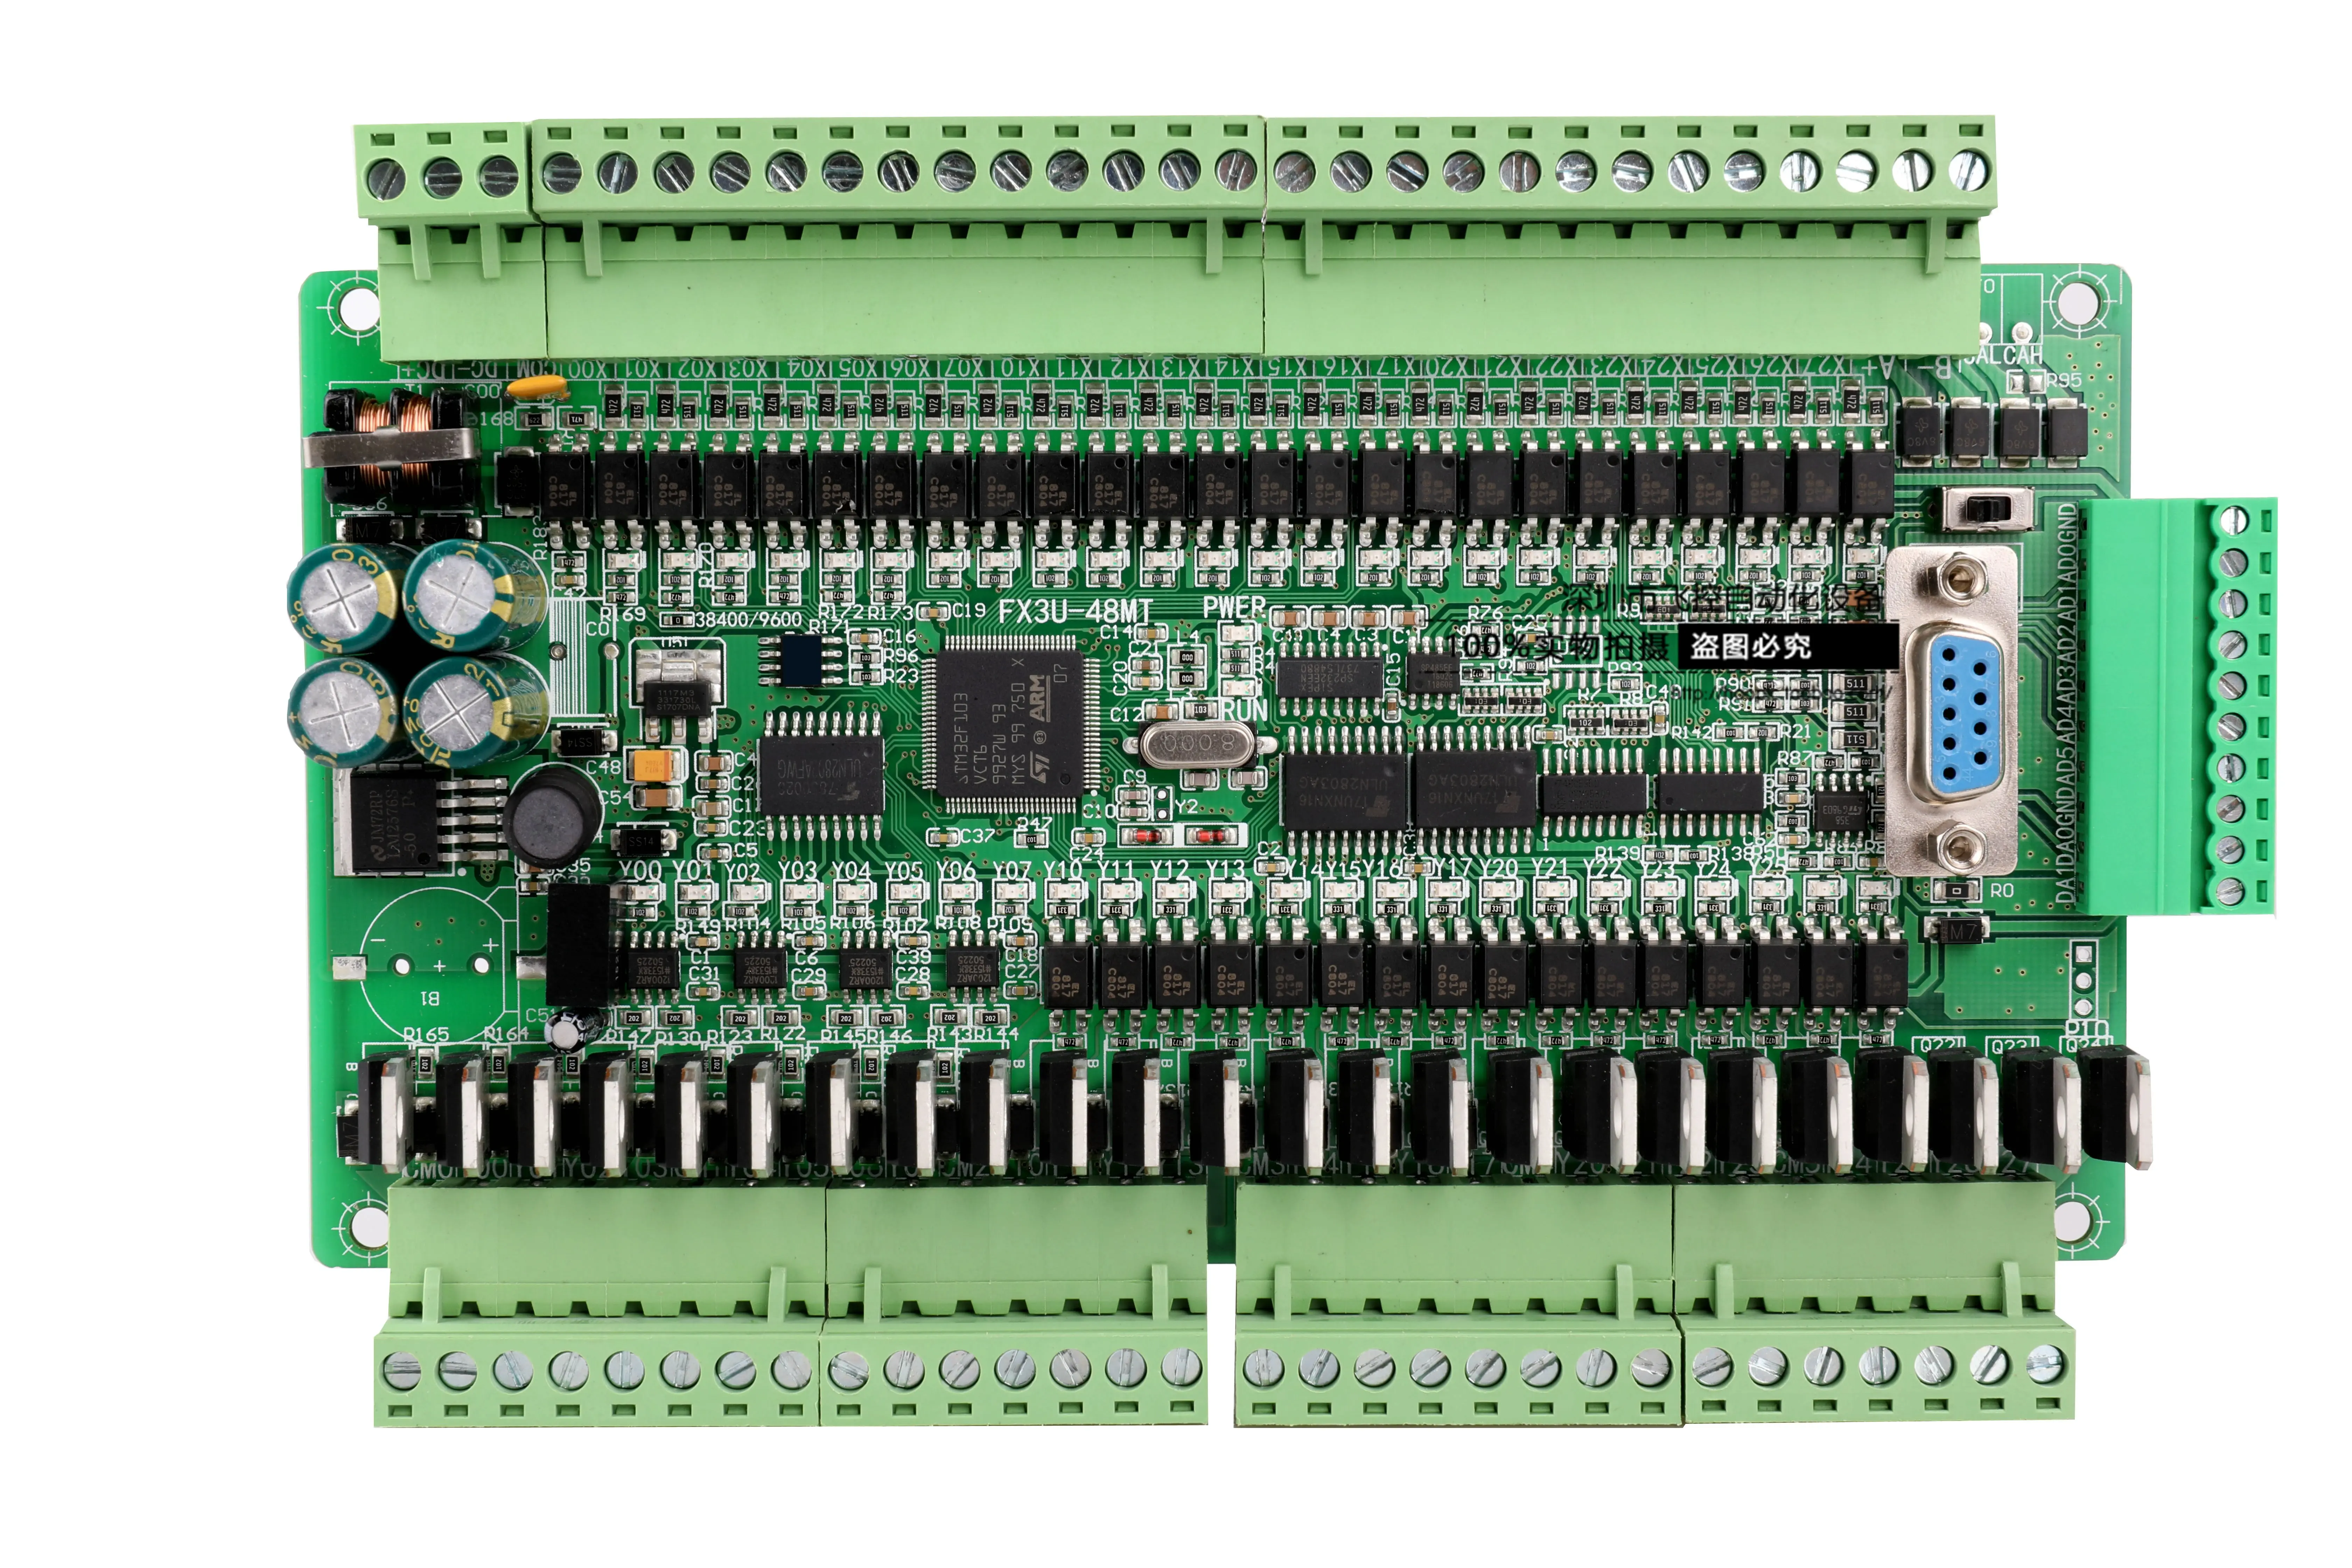 ПЛК промышленный пульт управления FX1N FX2N FX3U-48MT 6AD 2DA 24 вход 24 транзисторный выход RS485 RTC может быть расширен